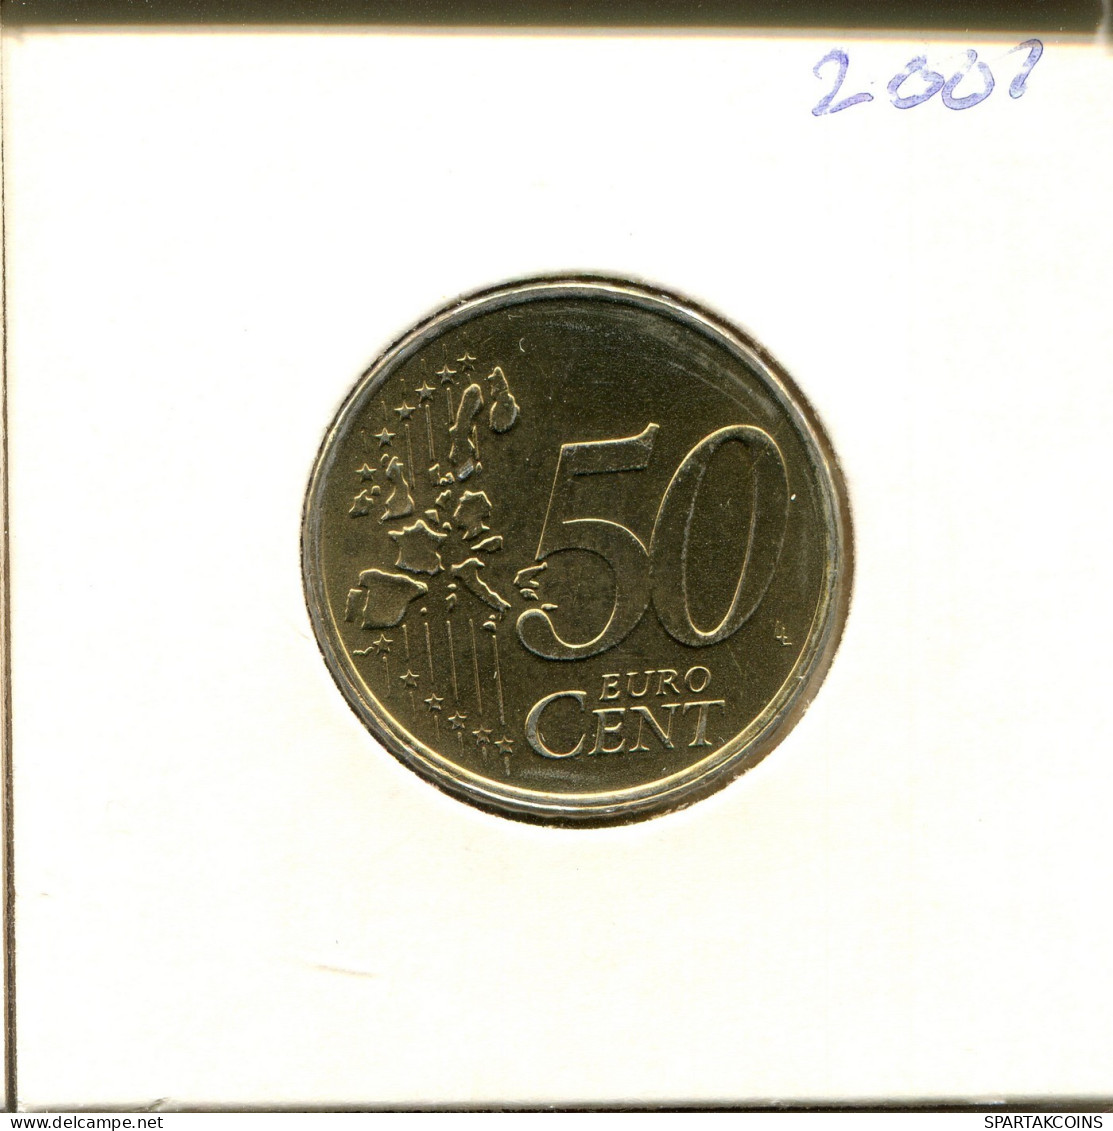 50 EURO CENTS 2001 NEERLANDÉS NETHERLANDS Moneda #EU279.E.A - Niederlande